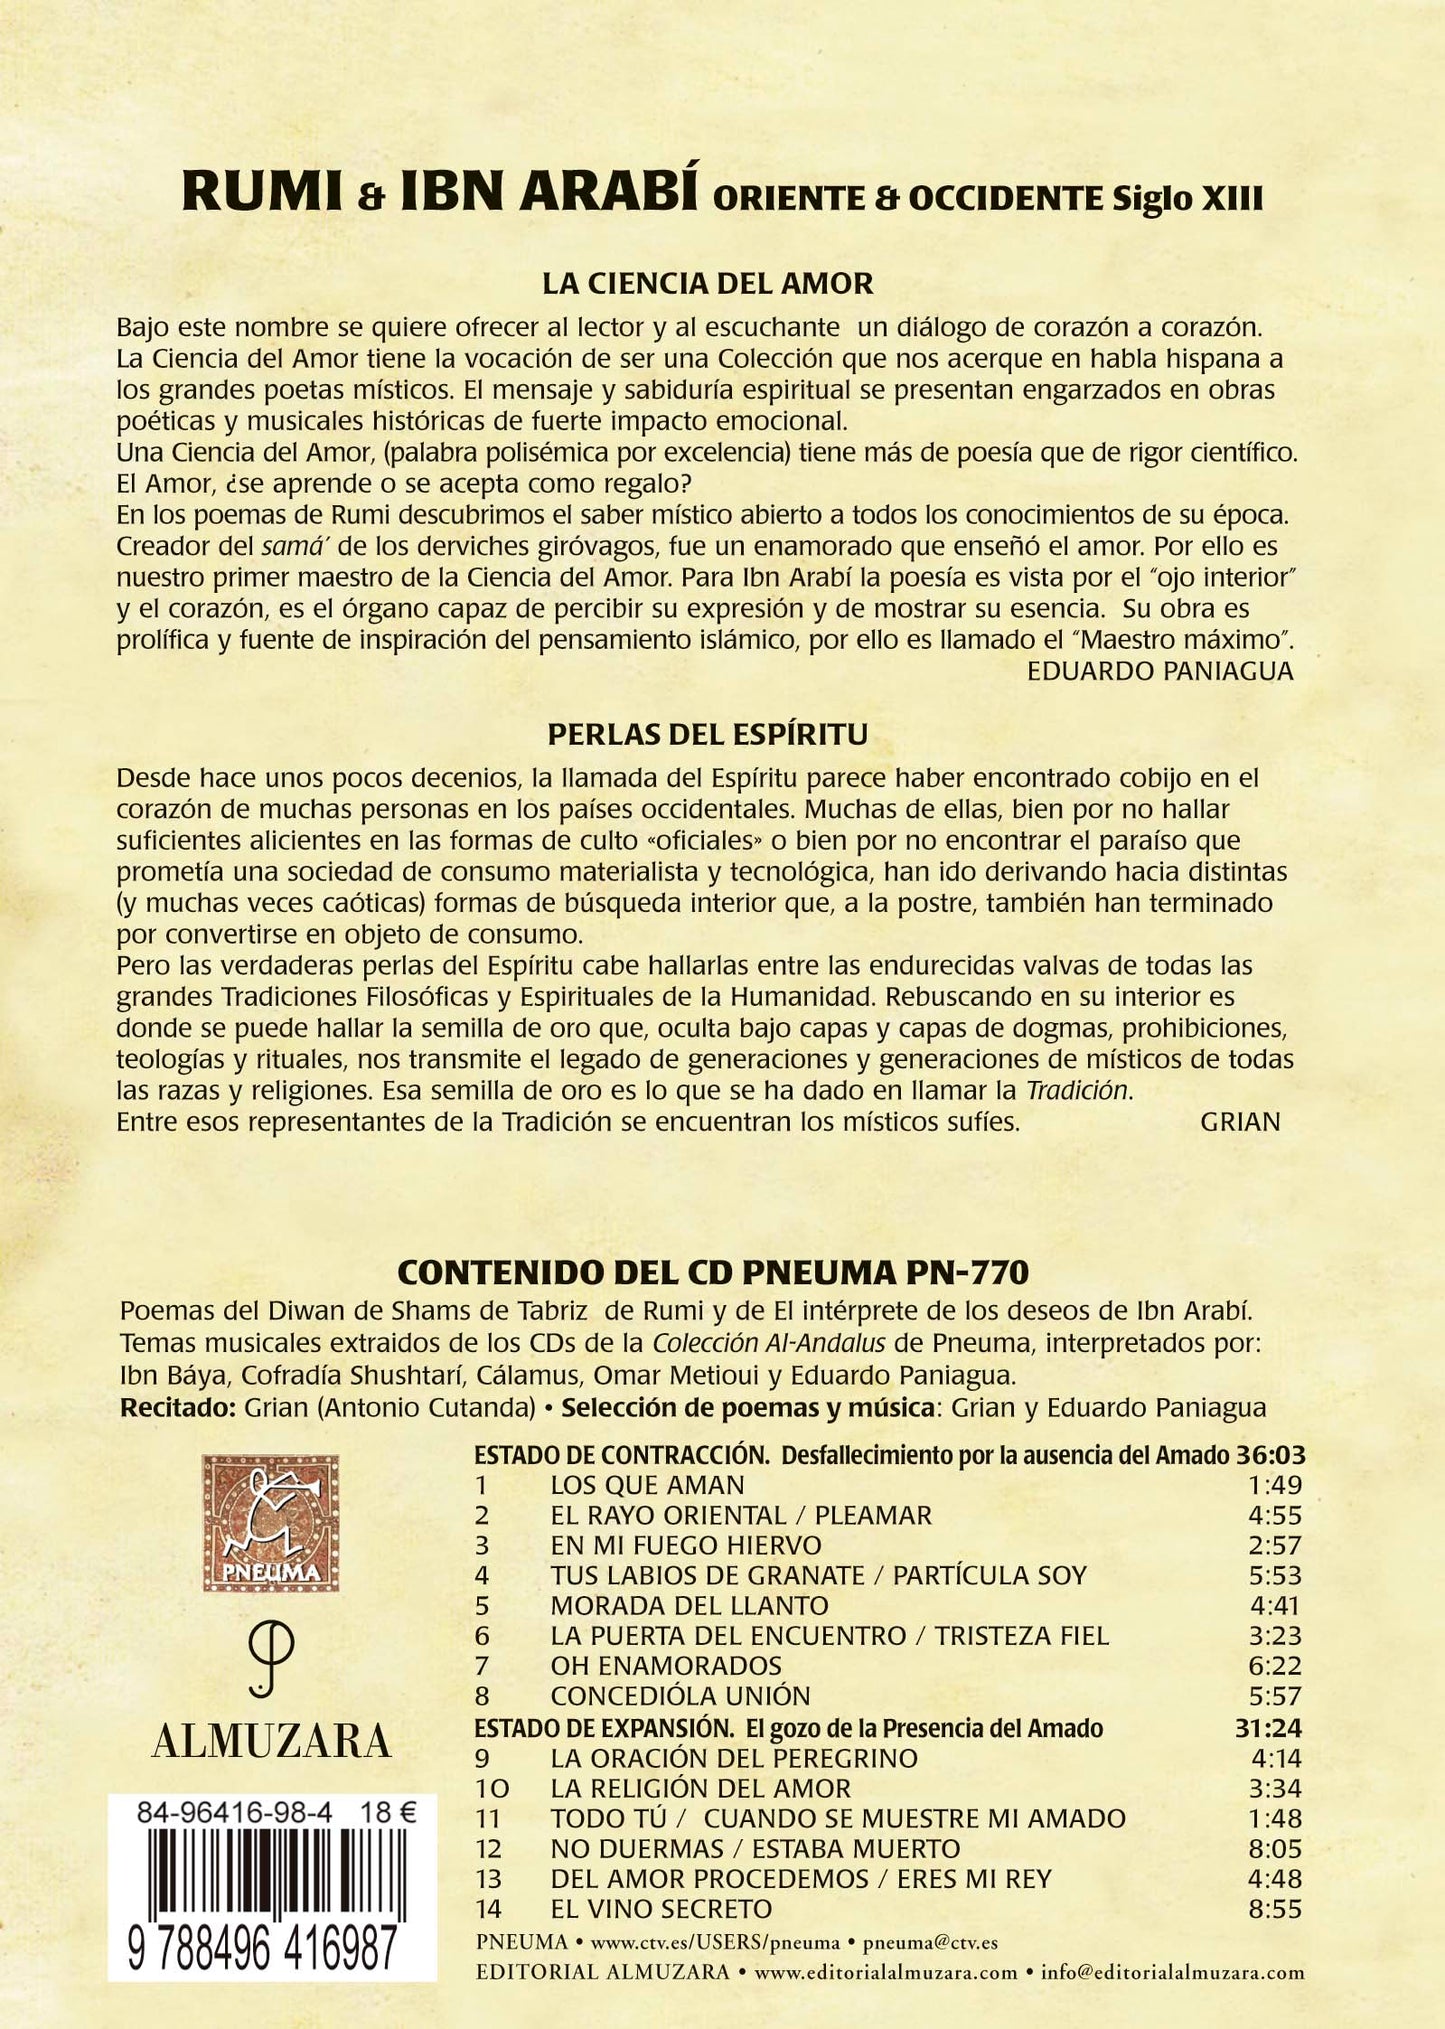 PN 770 RUMI-IBN ARABÍ. ORIENTE & OCCIDENTE Siglo XIII (libro-disco Almuzara)